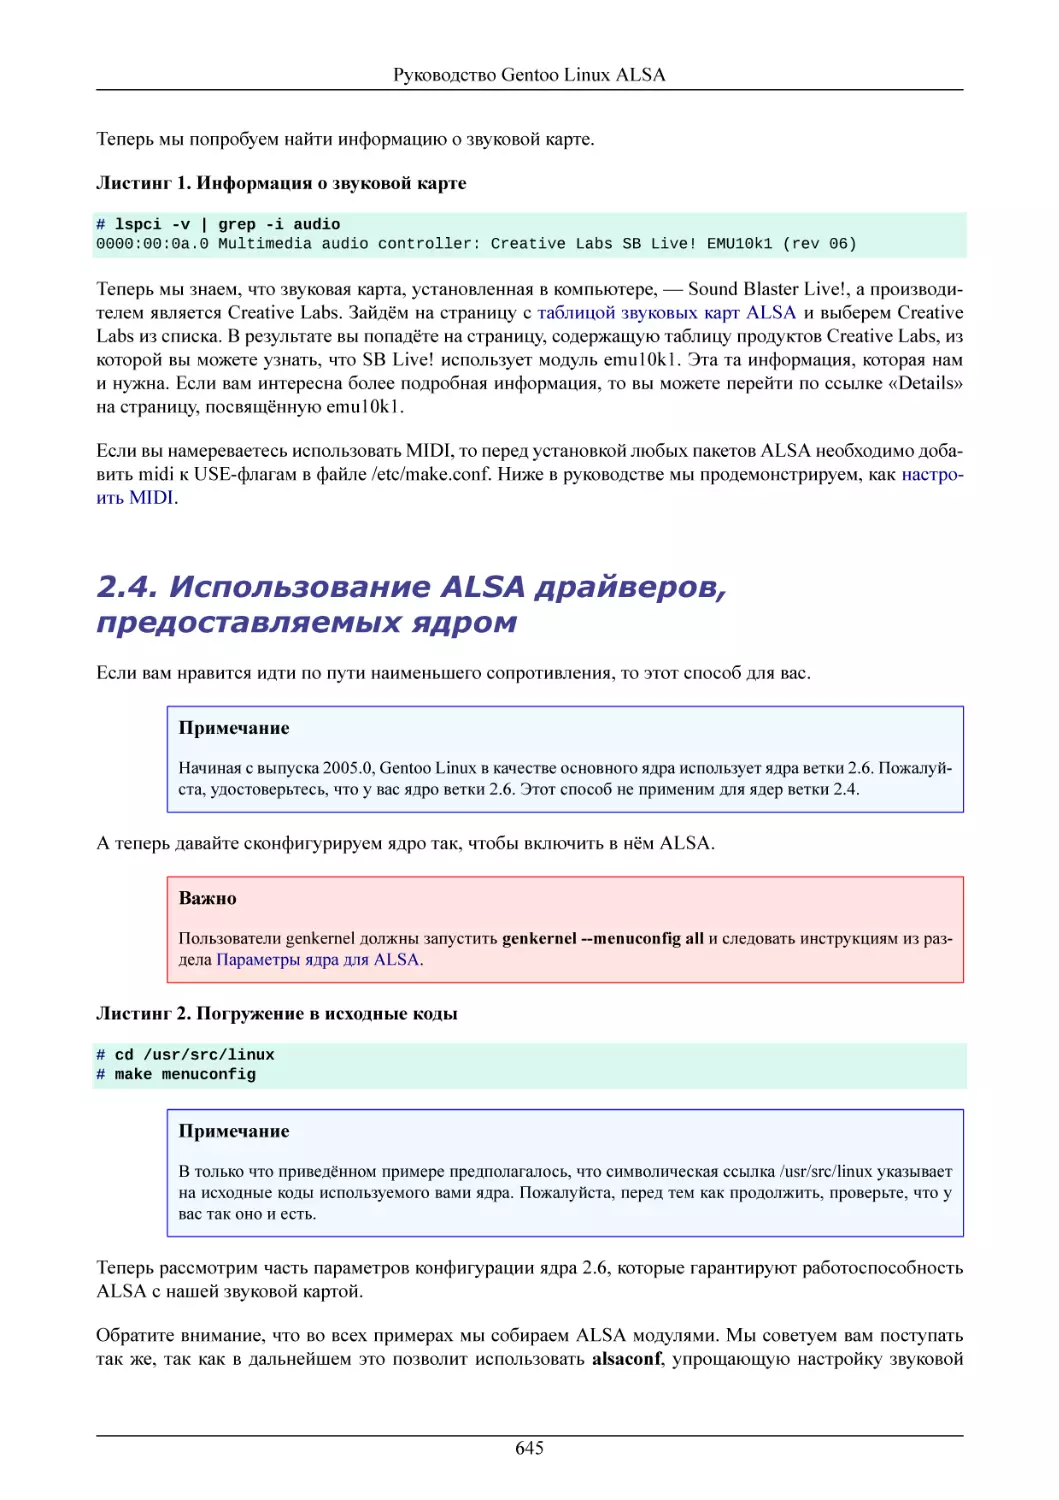 Использование ALSA драйверов, предоставляемых ядром